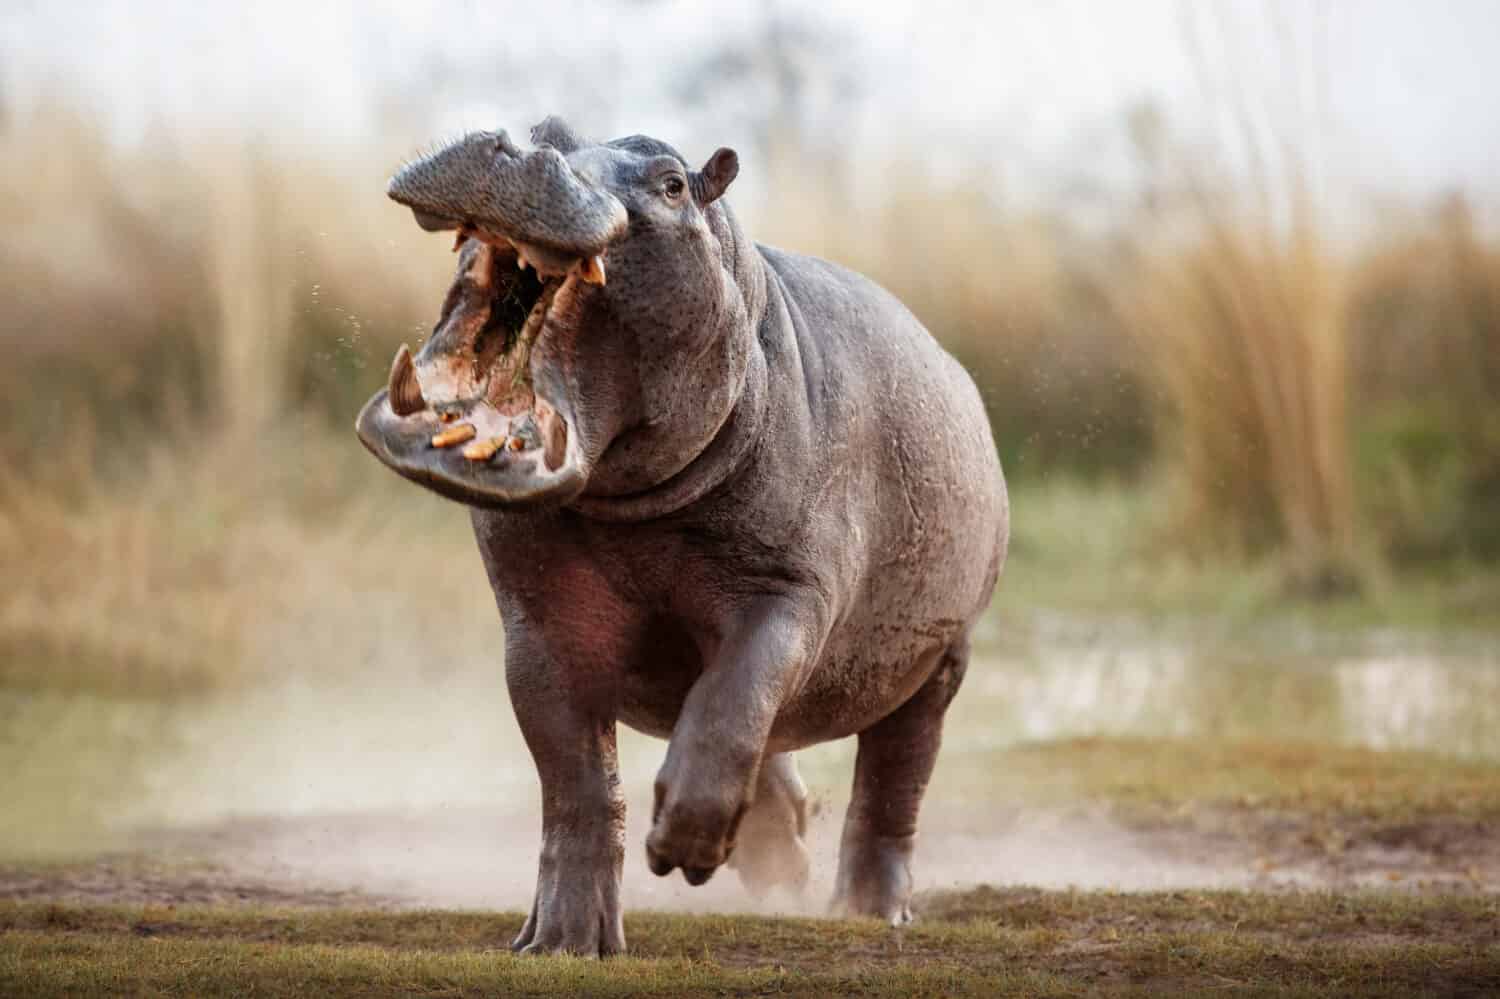 Maschio aggressivo dell'ippopotamo che attacca l'auto.  Enorme maschio di ippopotamo che intimidisce l'avversario.  Animale selvatico nell'habitat naturale.  Fauna selvatica africana.  Questa è l'Africa.  Ippopotamo anfibio.